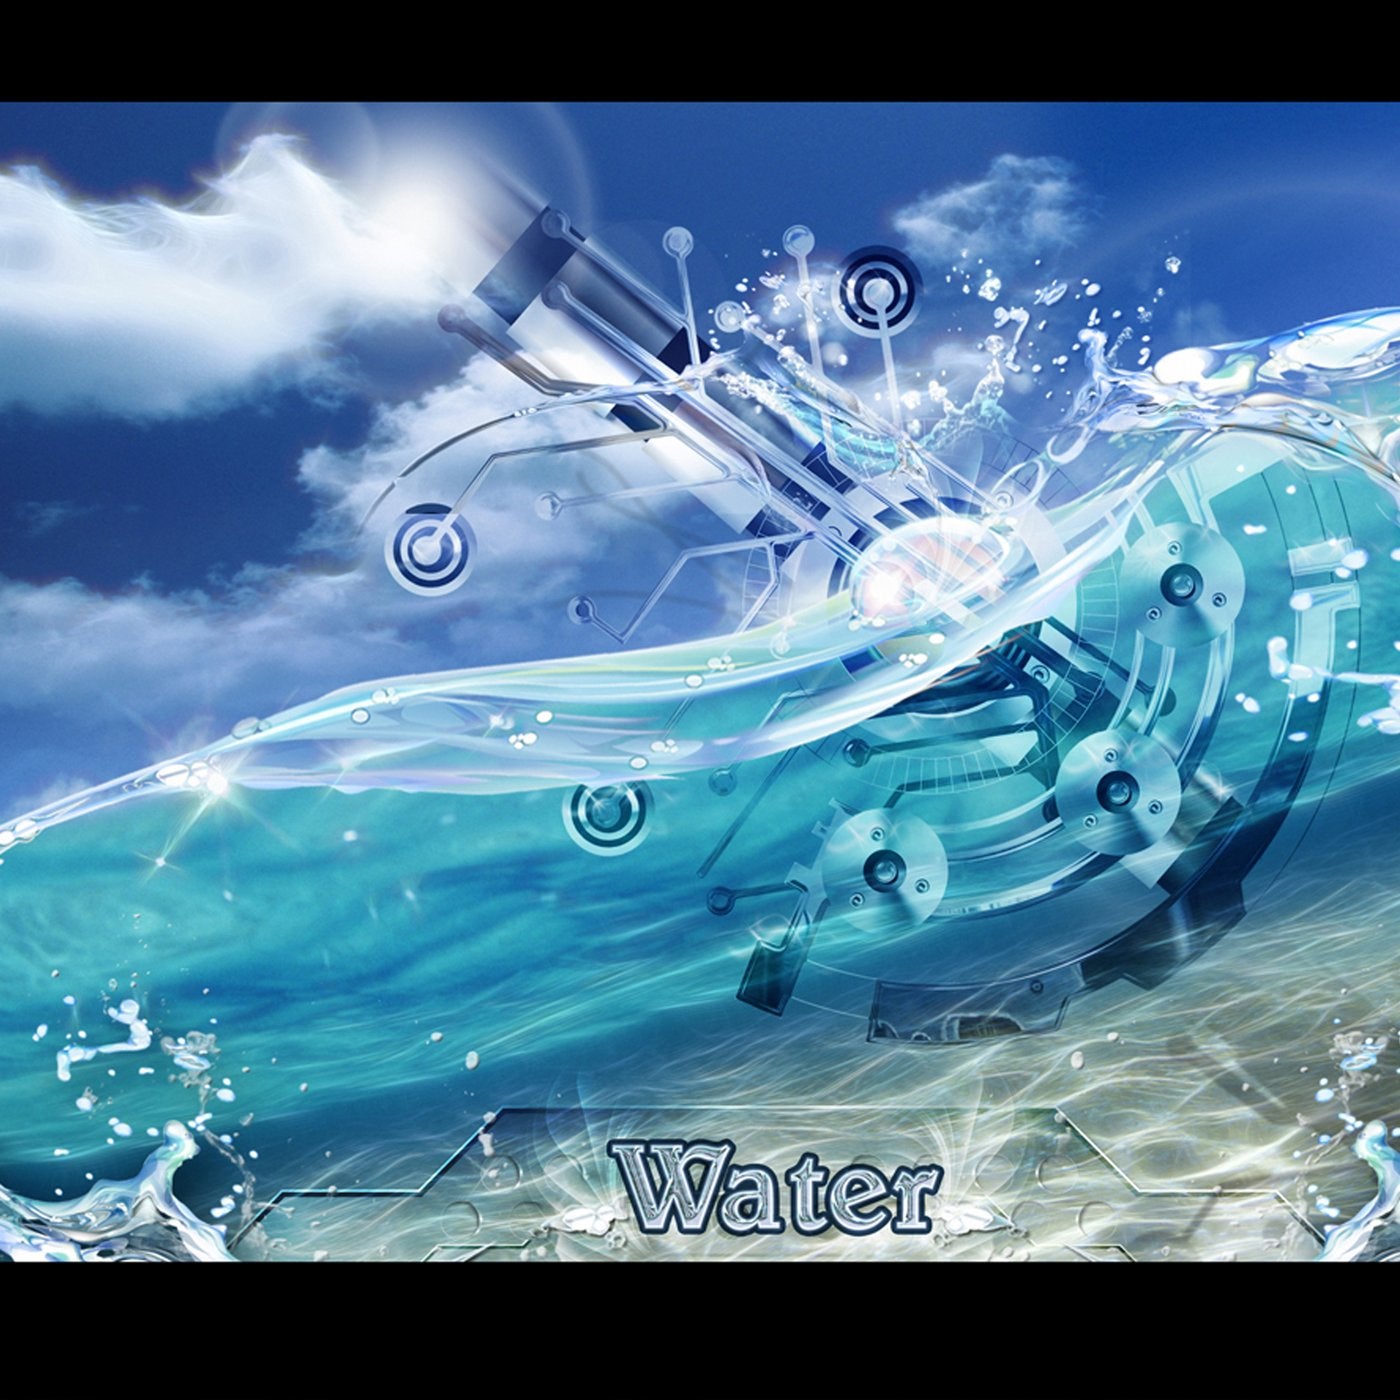 Спокойная музыка воды. Музыкальная вода. Вода обложка. Музыка на воде. Мелодия воды.